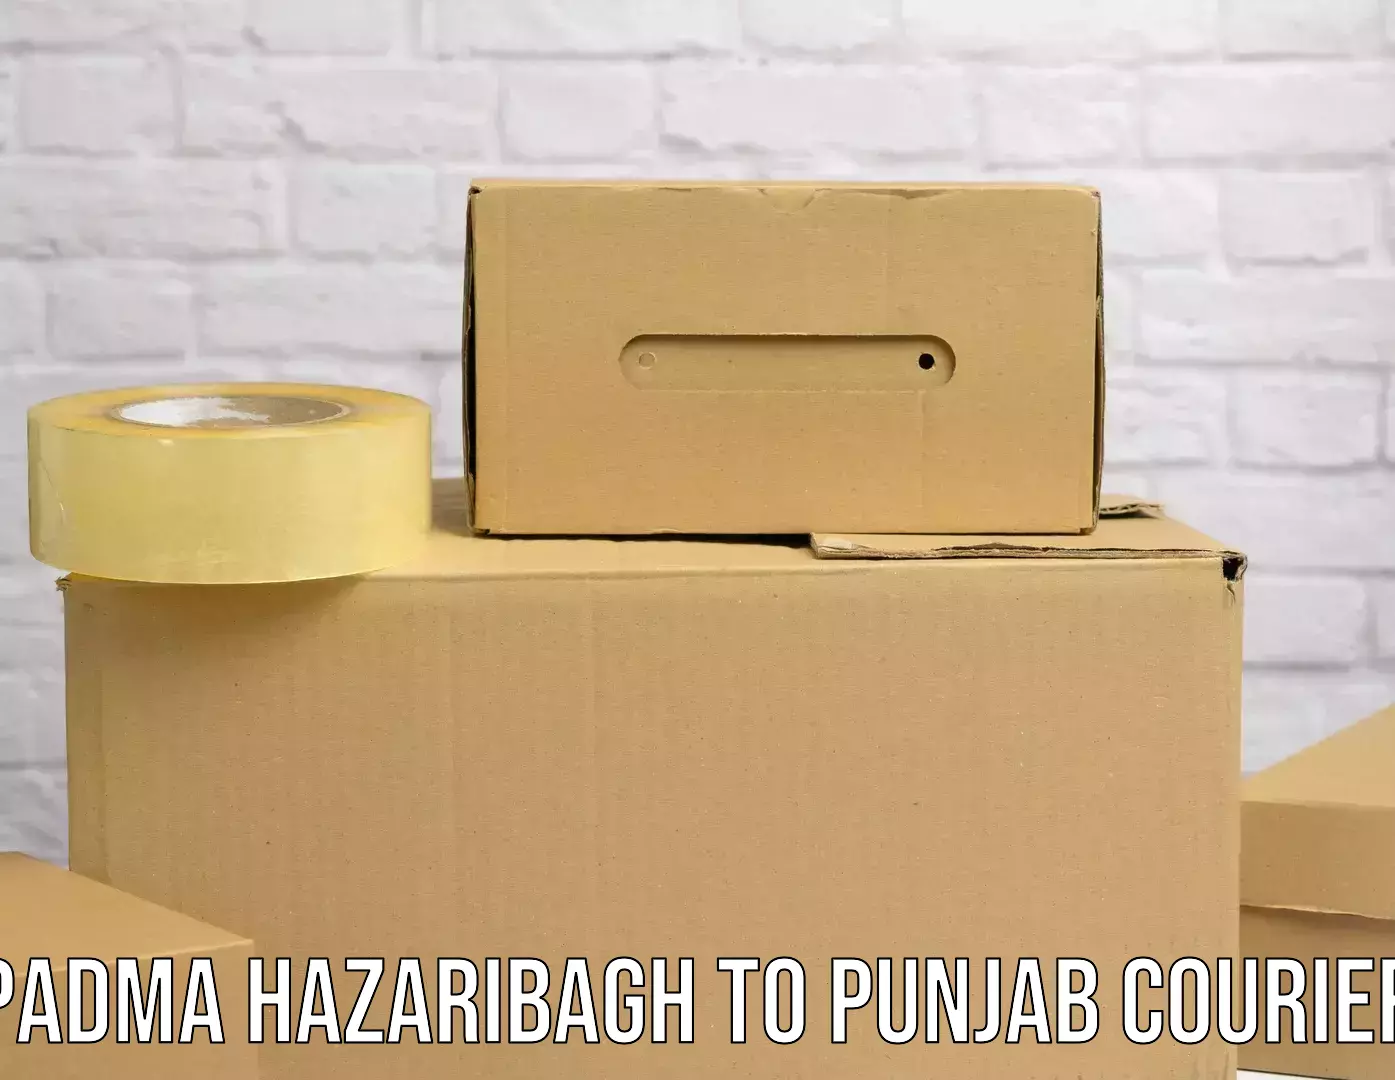 Cargo delivery service Padma Hazaribagh to Bathinda